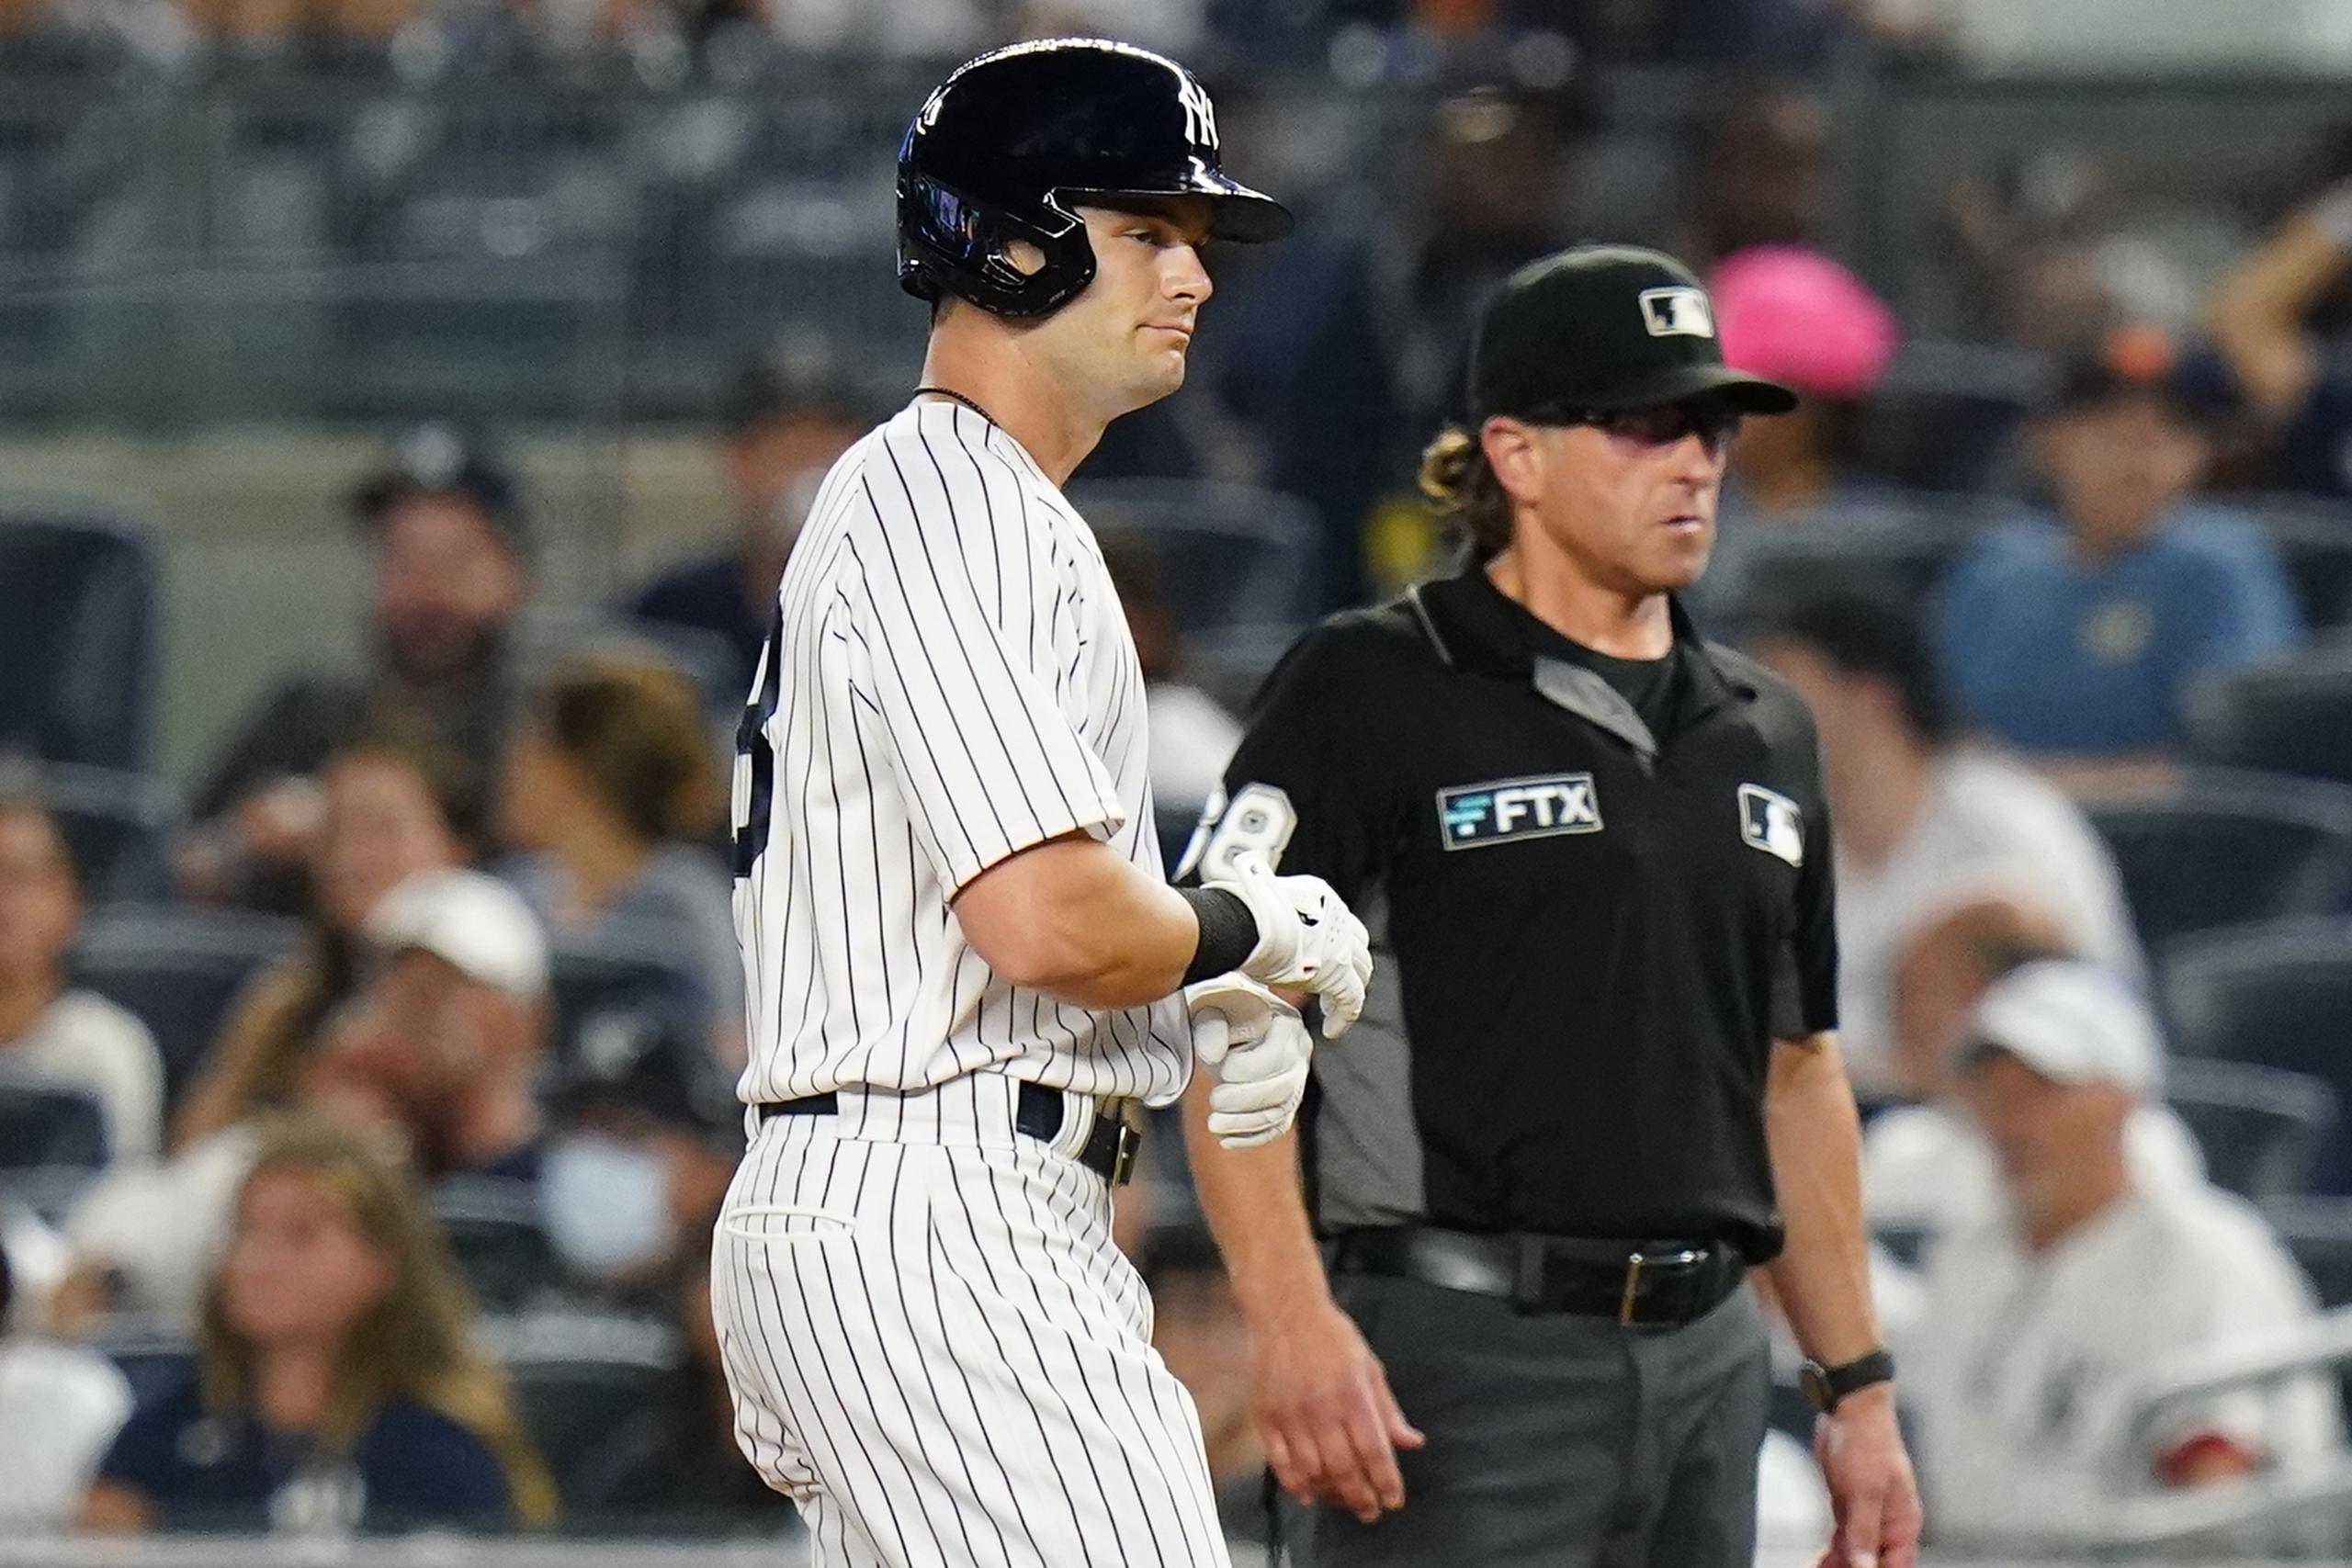 El jardinero Andrew Benintendi se estrenó como primero al bate en la alineación de los Yankees de Nueva York el jueves luego de que fuese canjeado a esa novena el miércoles.